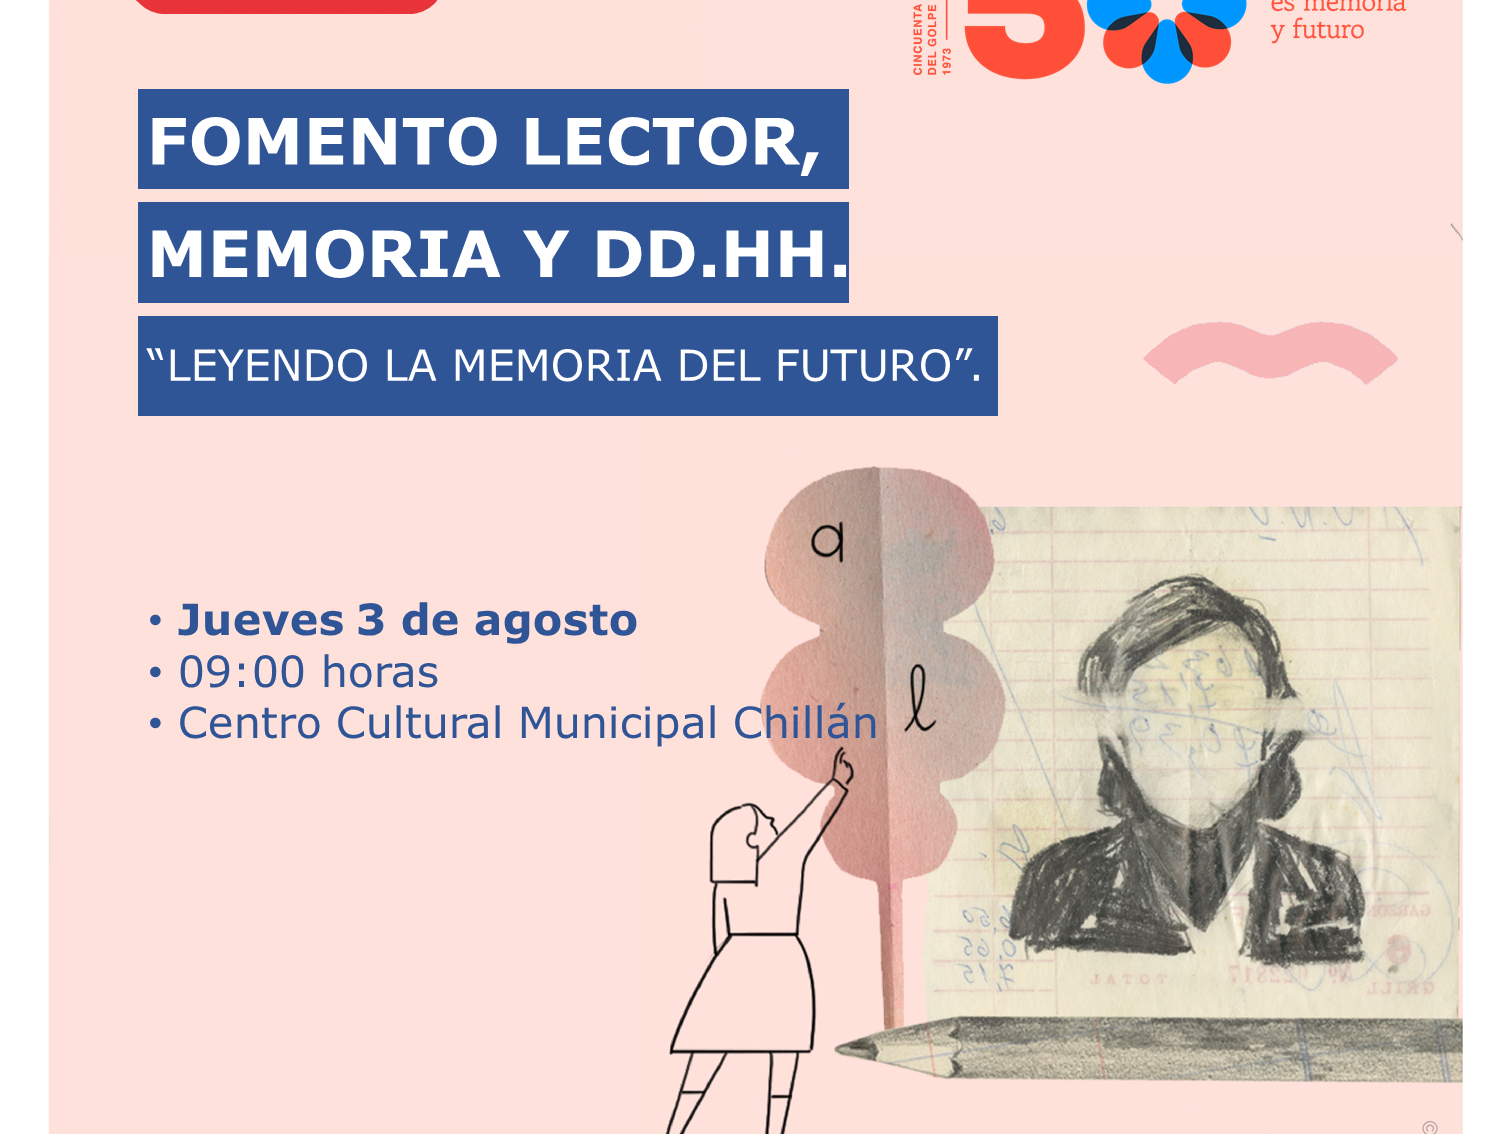 Primer seminario de fomento lector, memoria y derechos humanos: Leyendo la memoria del futuro